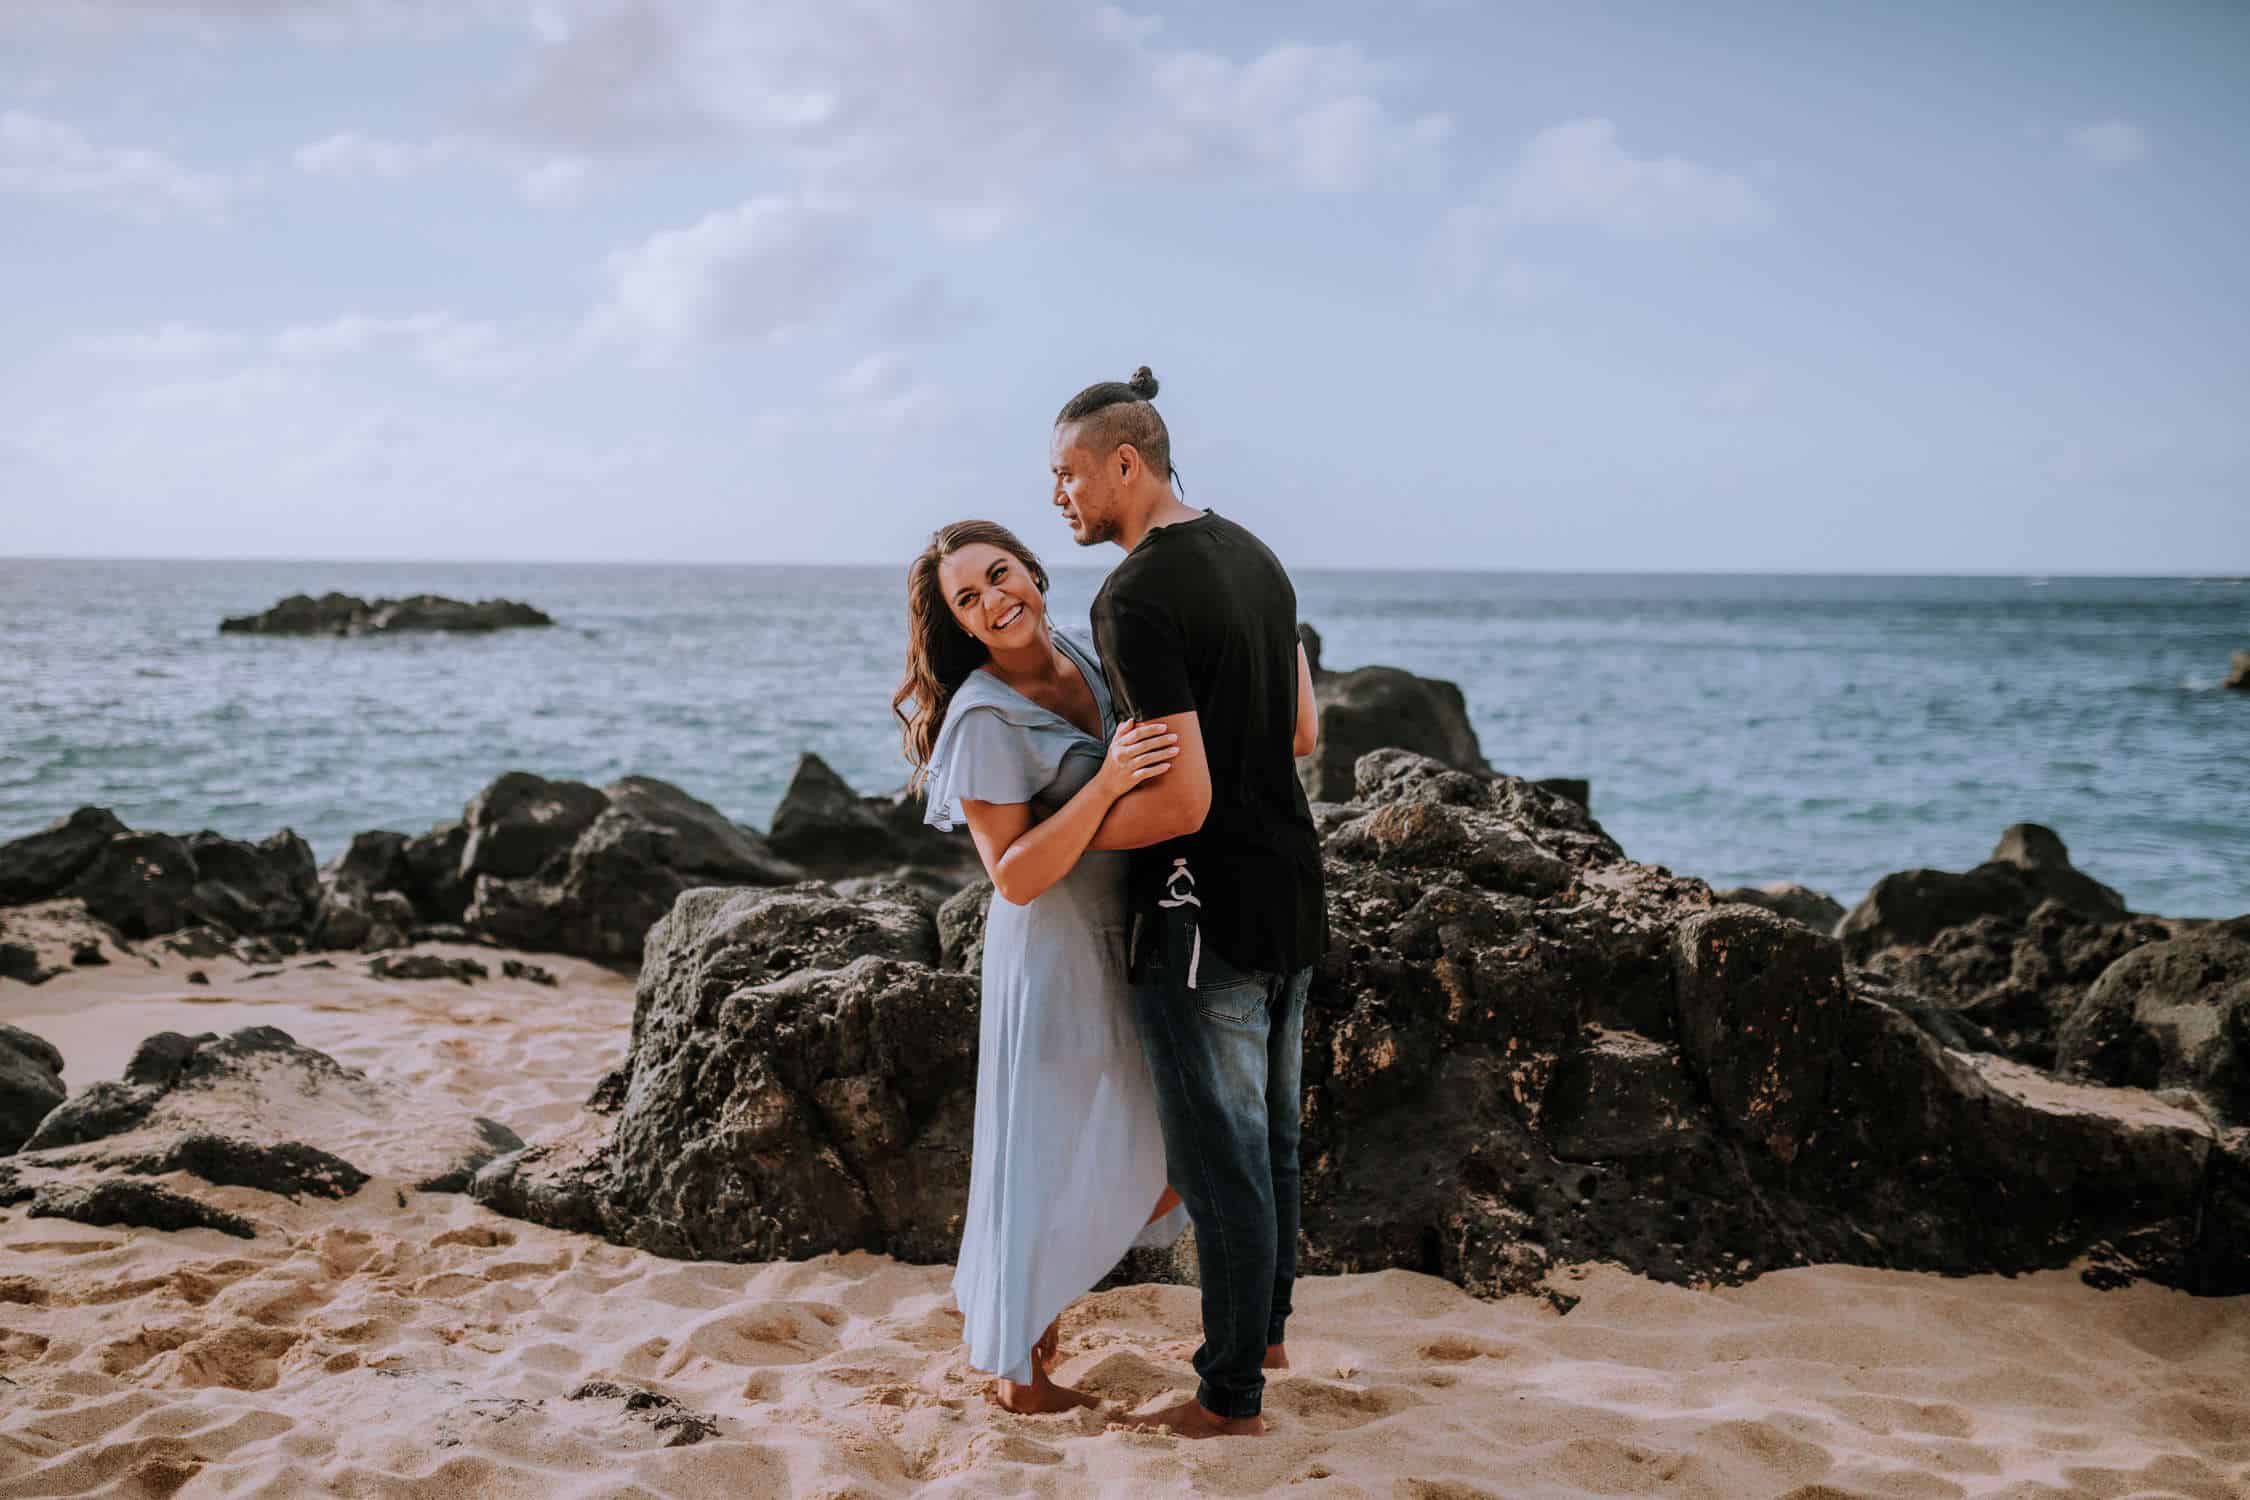 Engagement session on the coast of Oahu, Hawaii at Waimea Bay by Anela Benavides